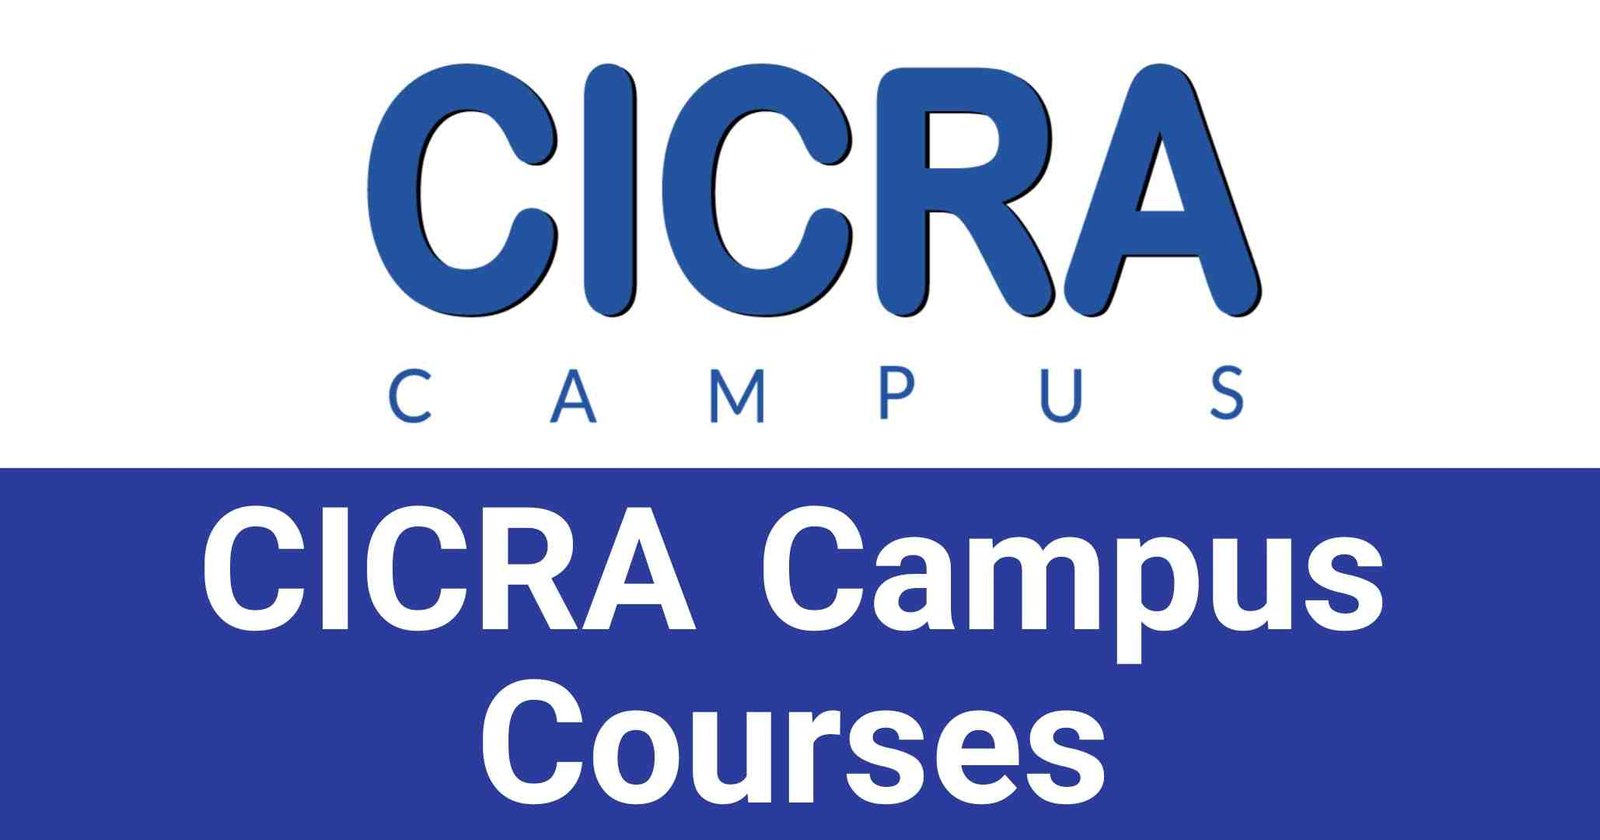 CICRA Campus Courses